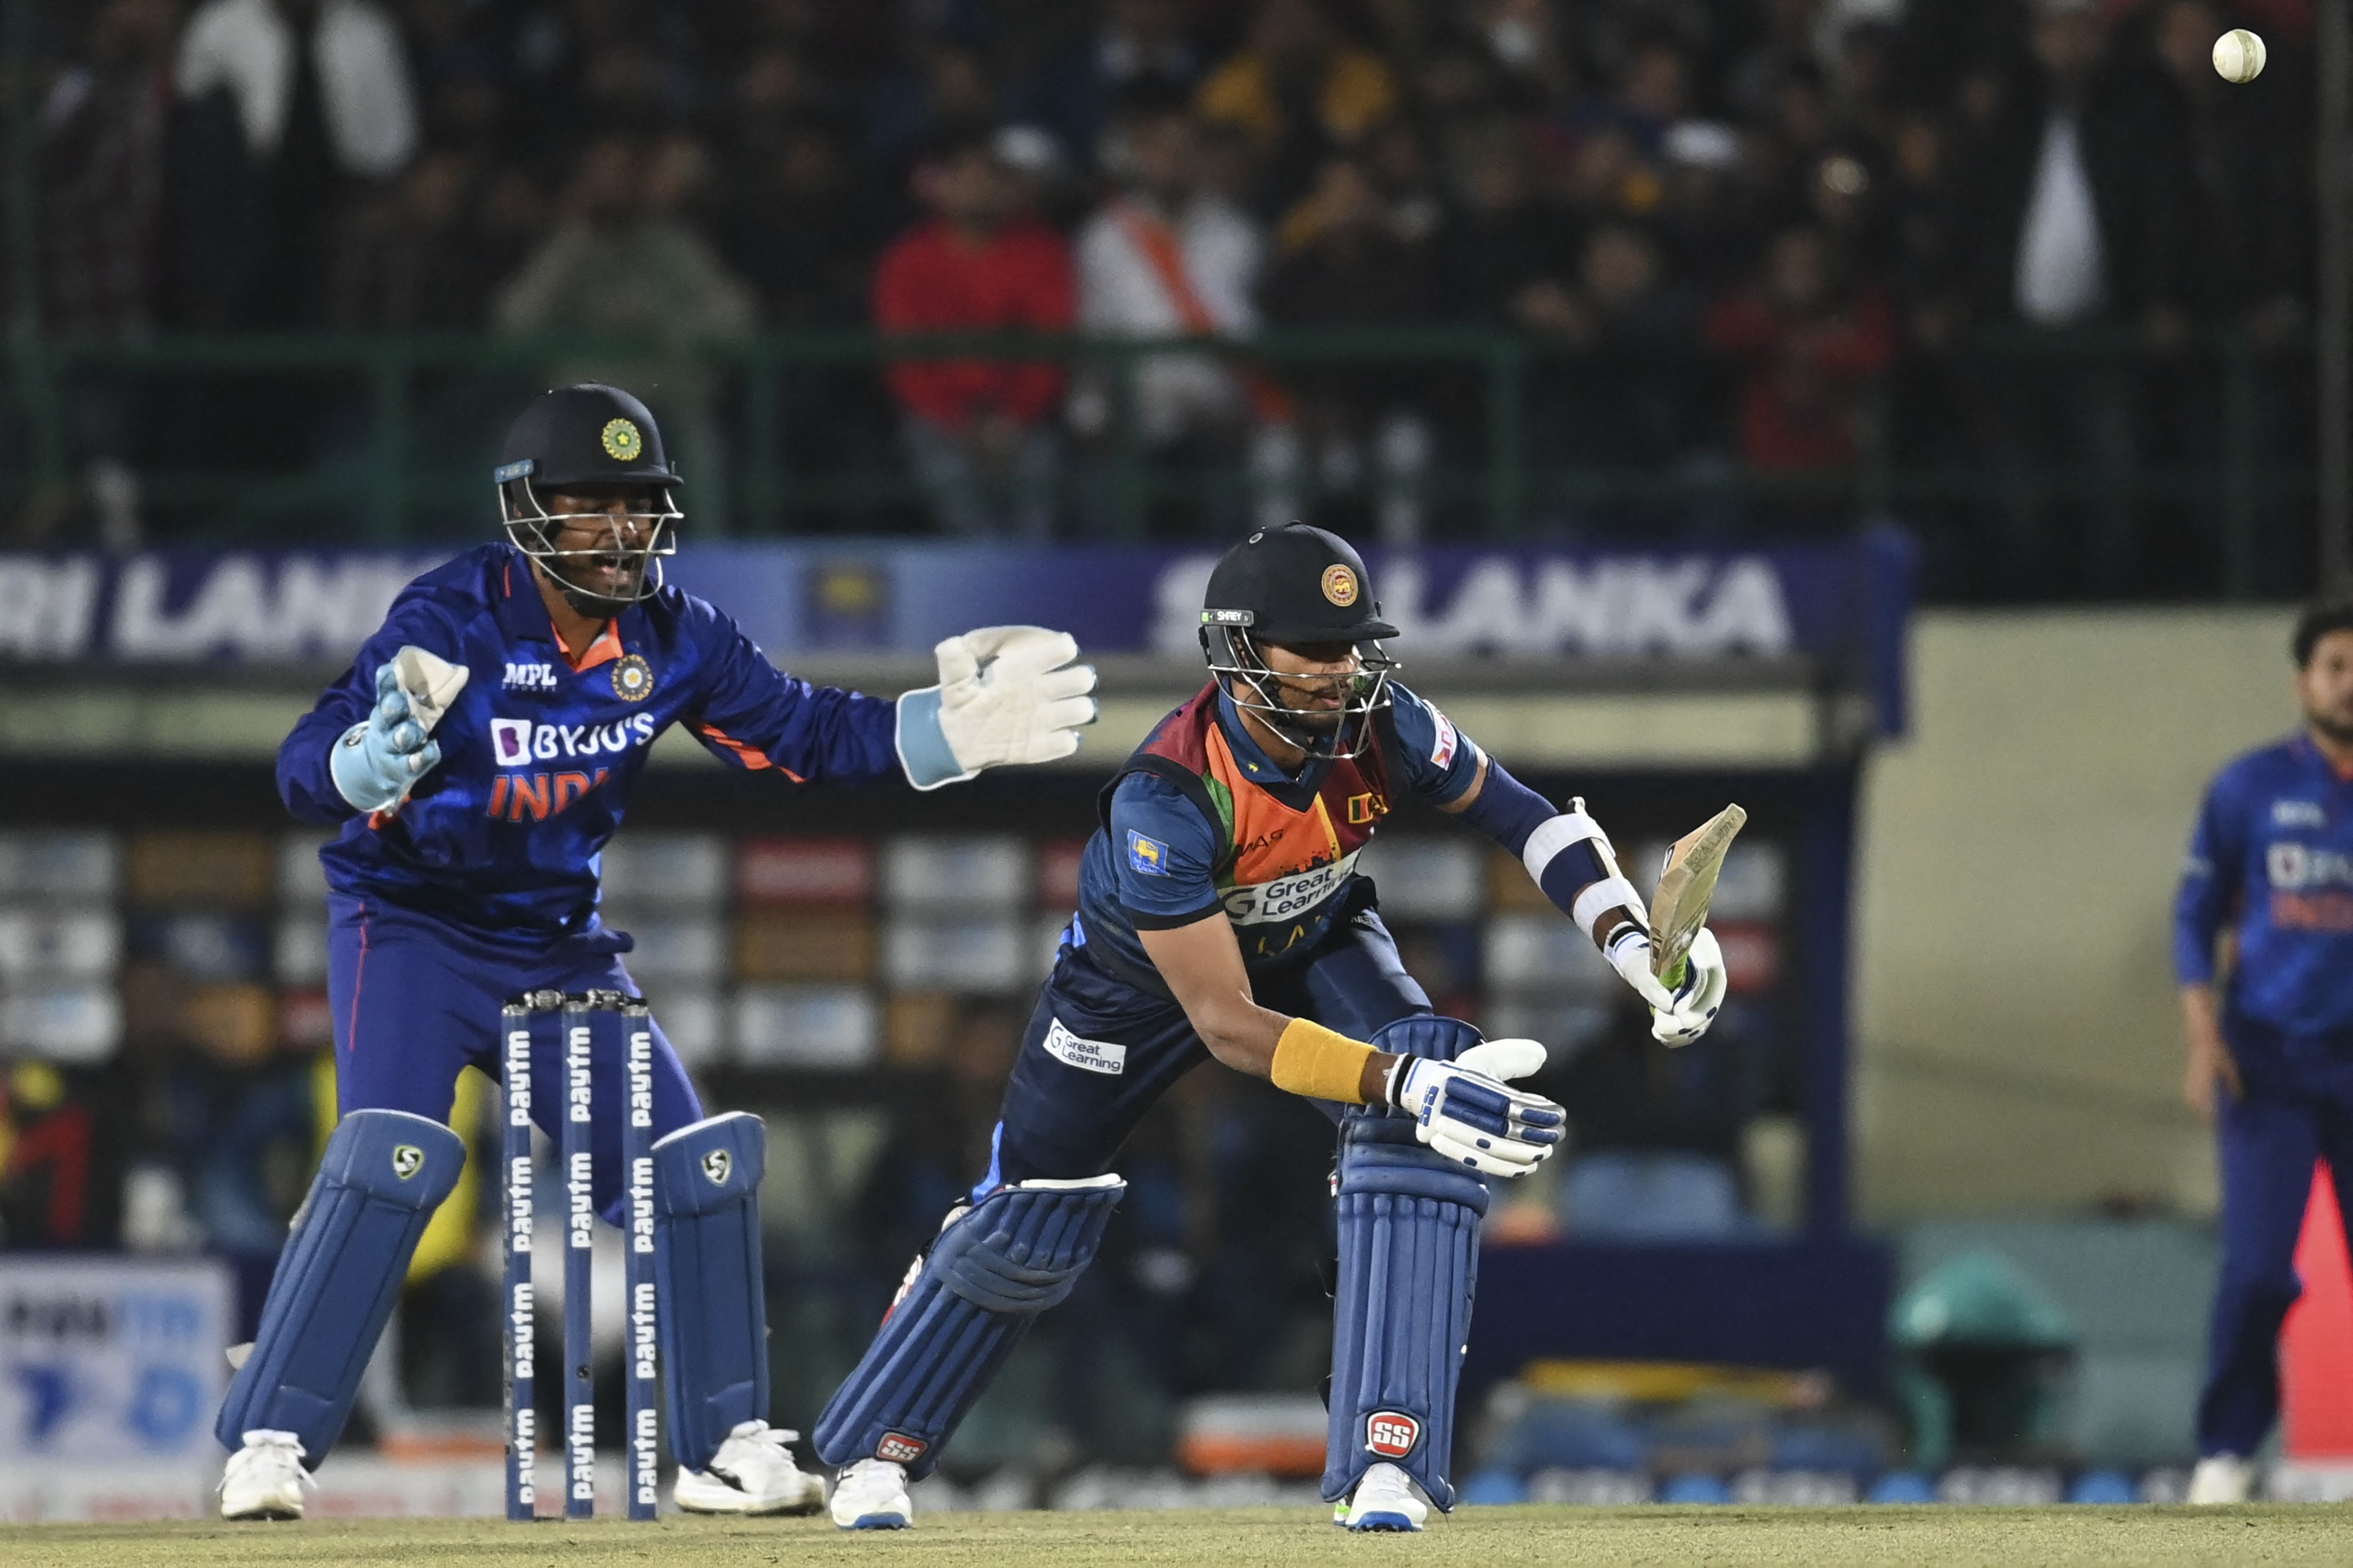 IND vs SL, 3rd T20I: कप्तान शनाका ने जड़ा शानदार अर्धशतक, श्रीलंका ने भारत को 147 रनों का लक्ष्य दिया